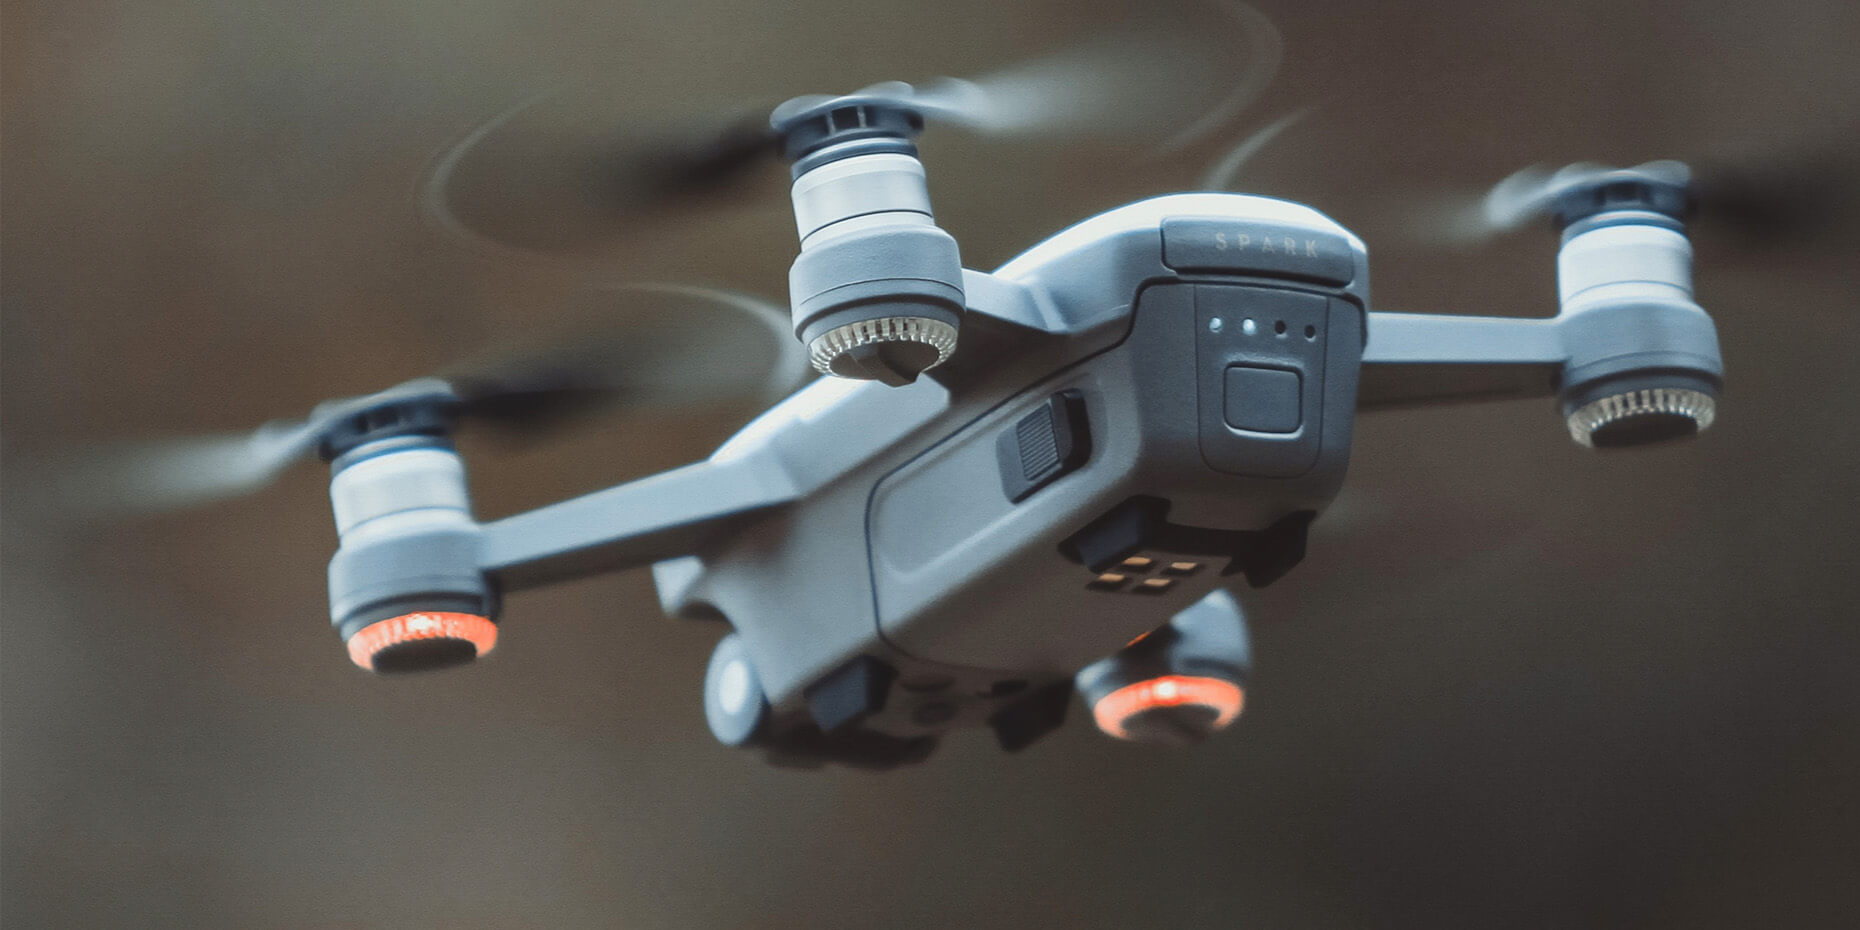 Dubbelklik Skills Drone Express